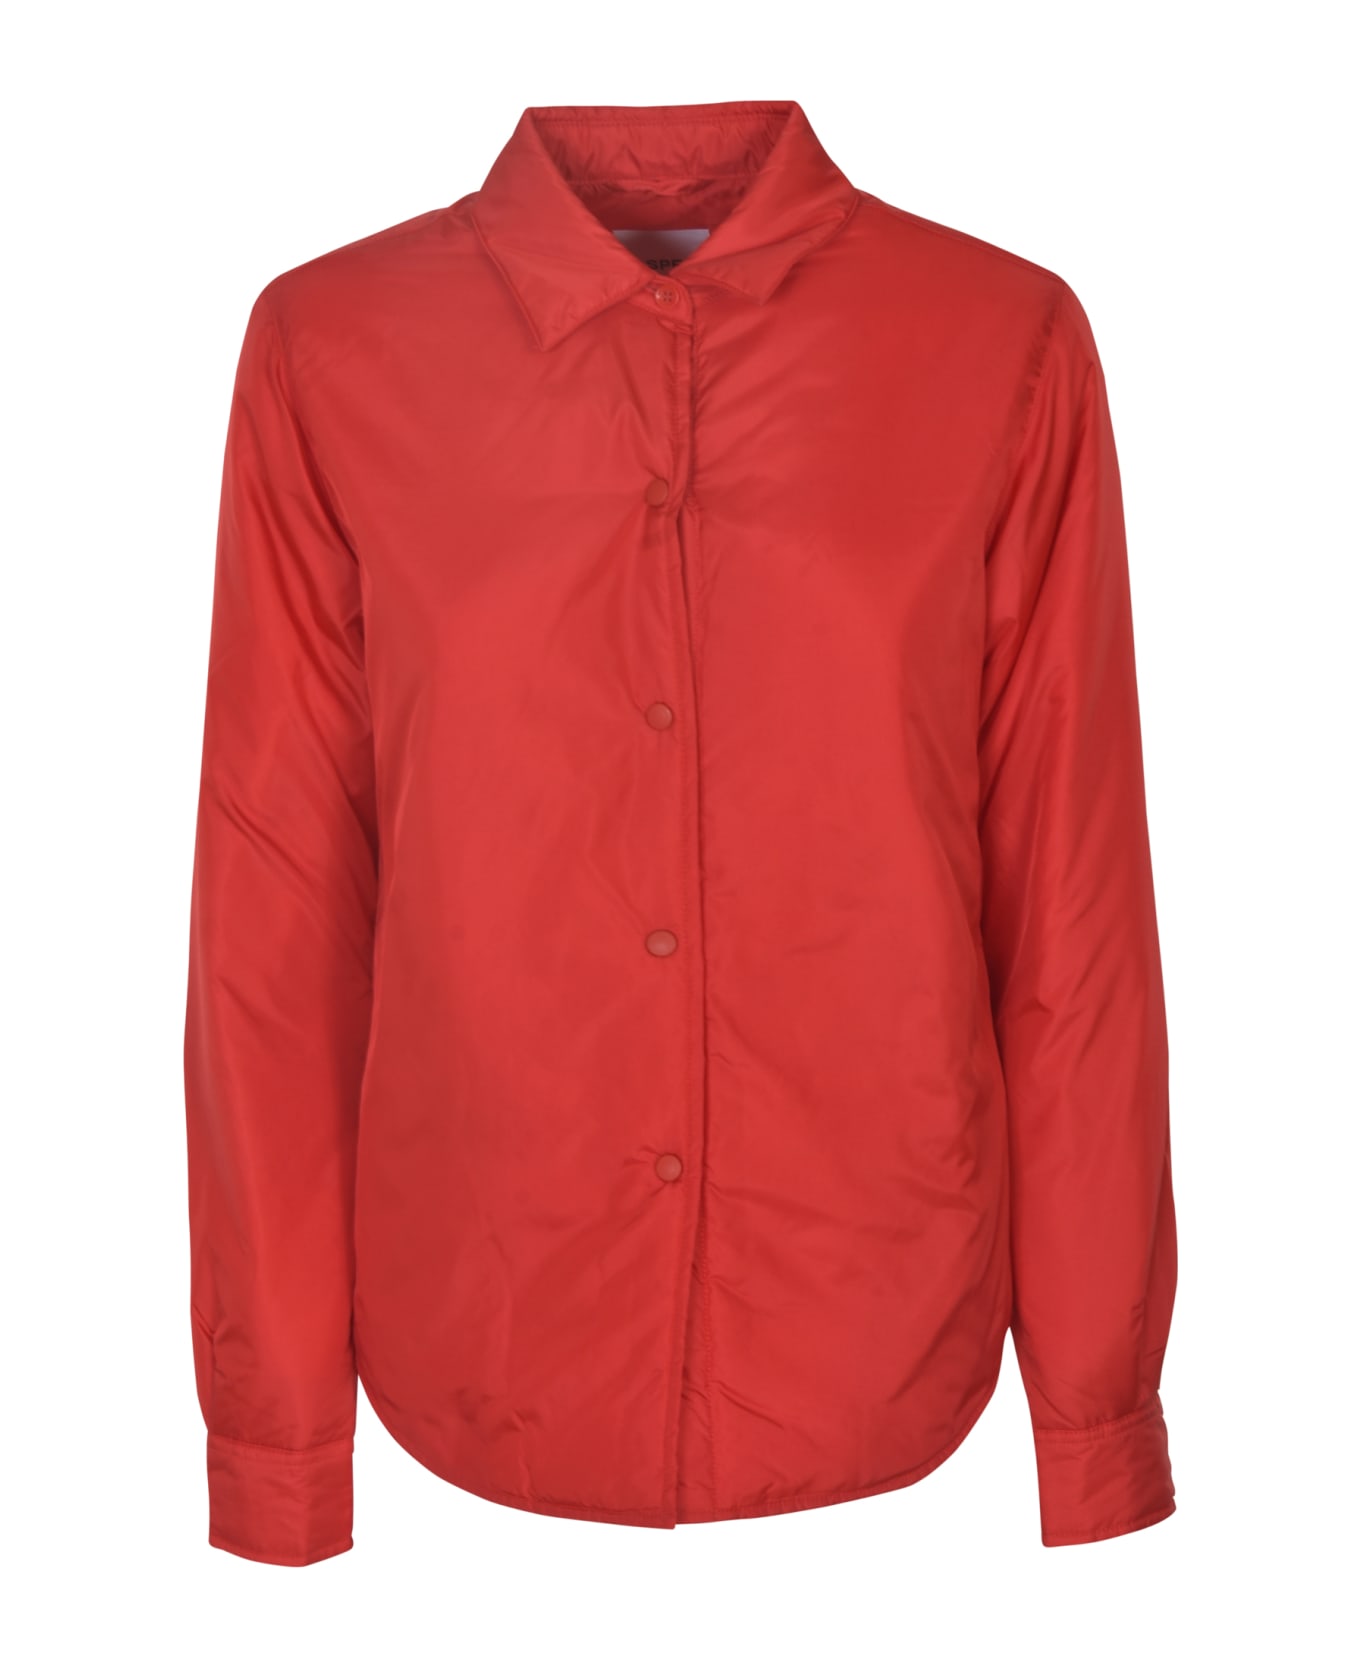 Aspesi Long-sleeved Shirt - Red